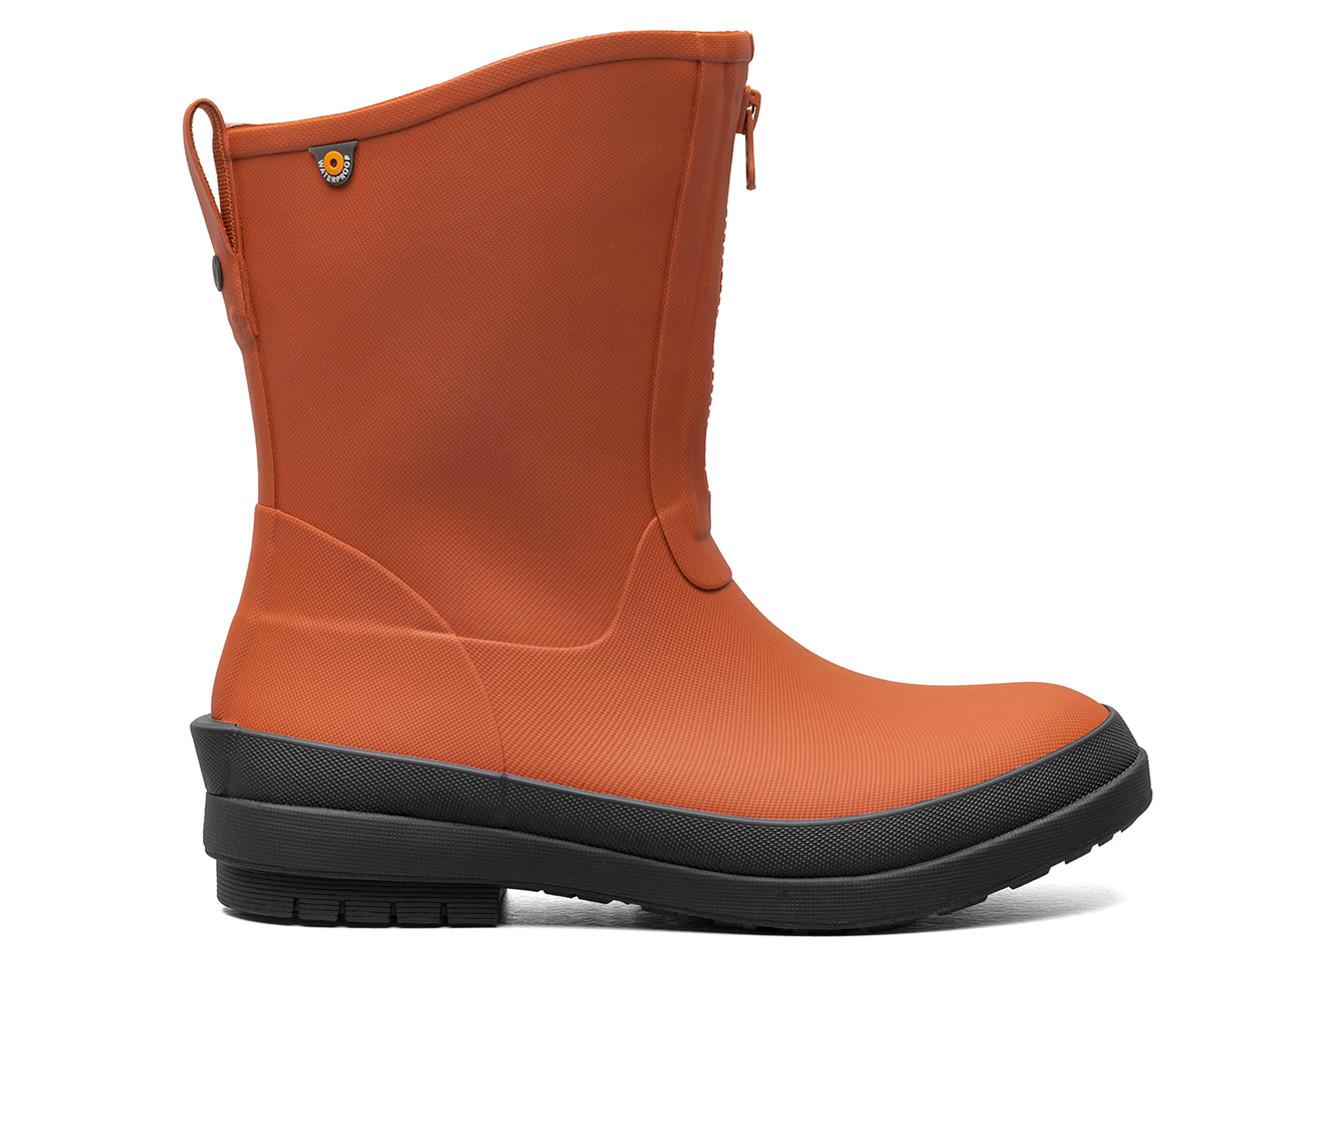 Women's Bogs Footwear Amanda Plush II Zip-Up Waterproof Boots